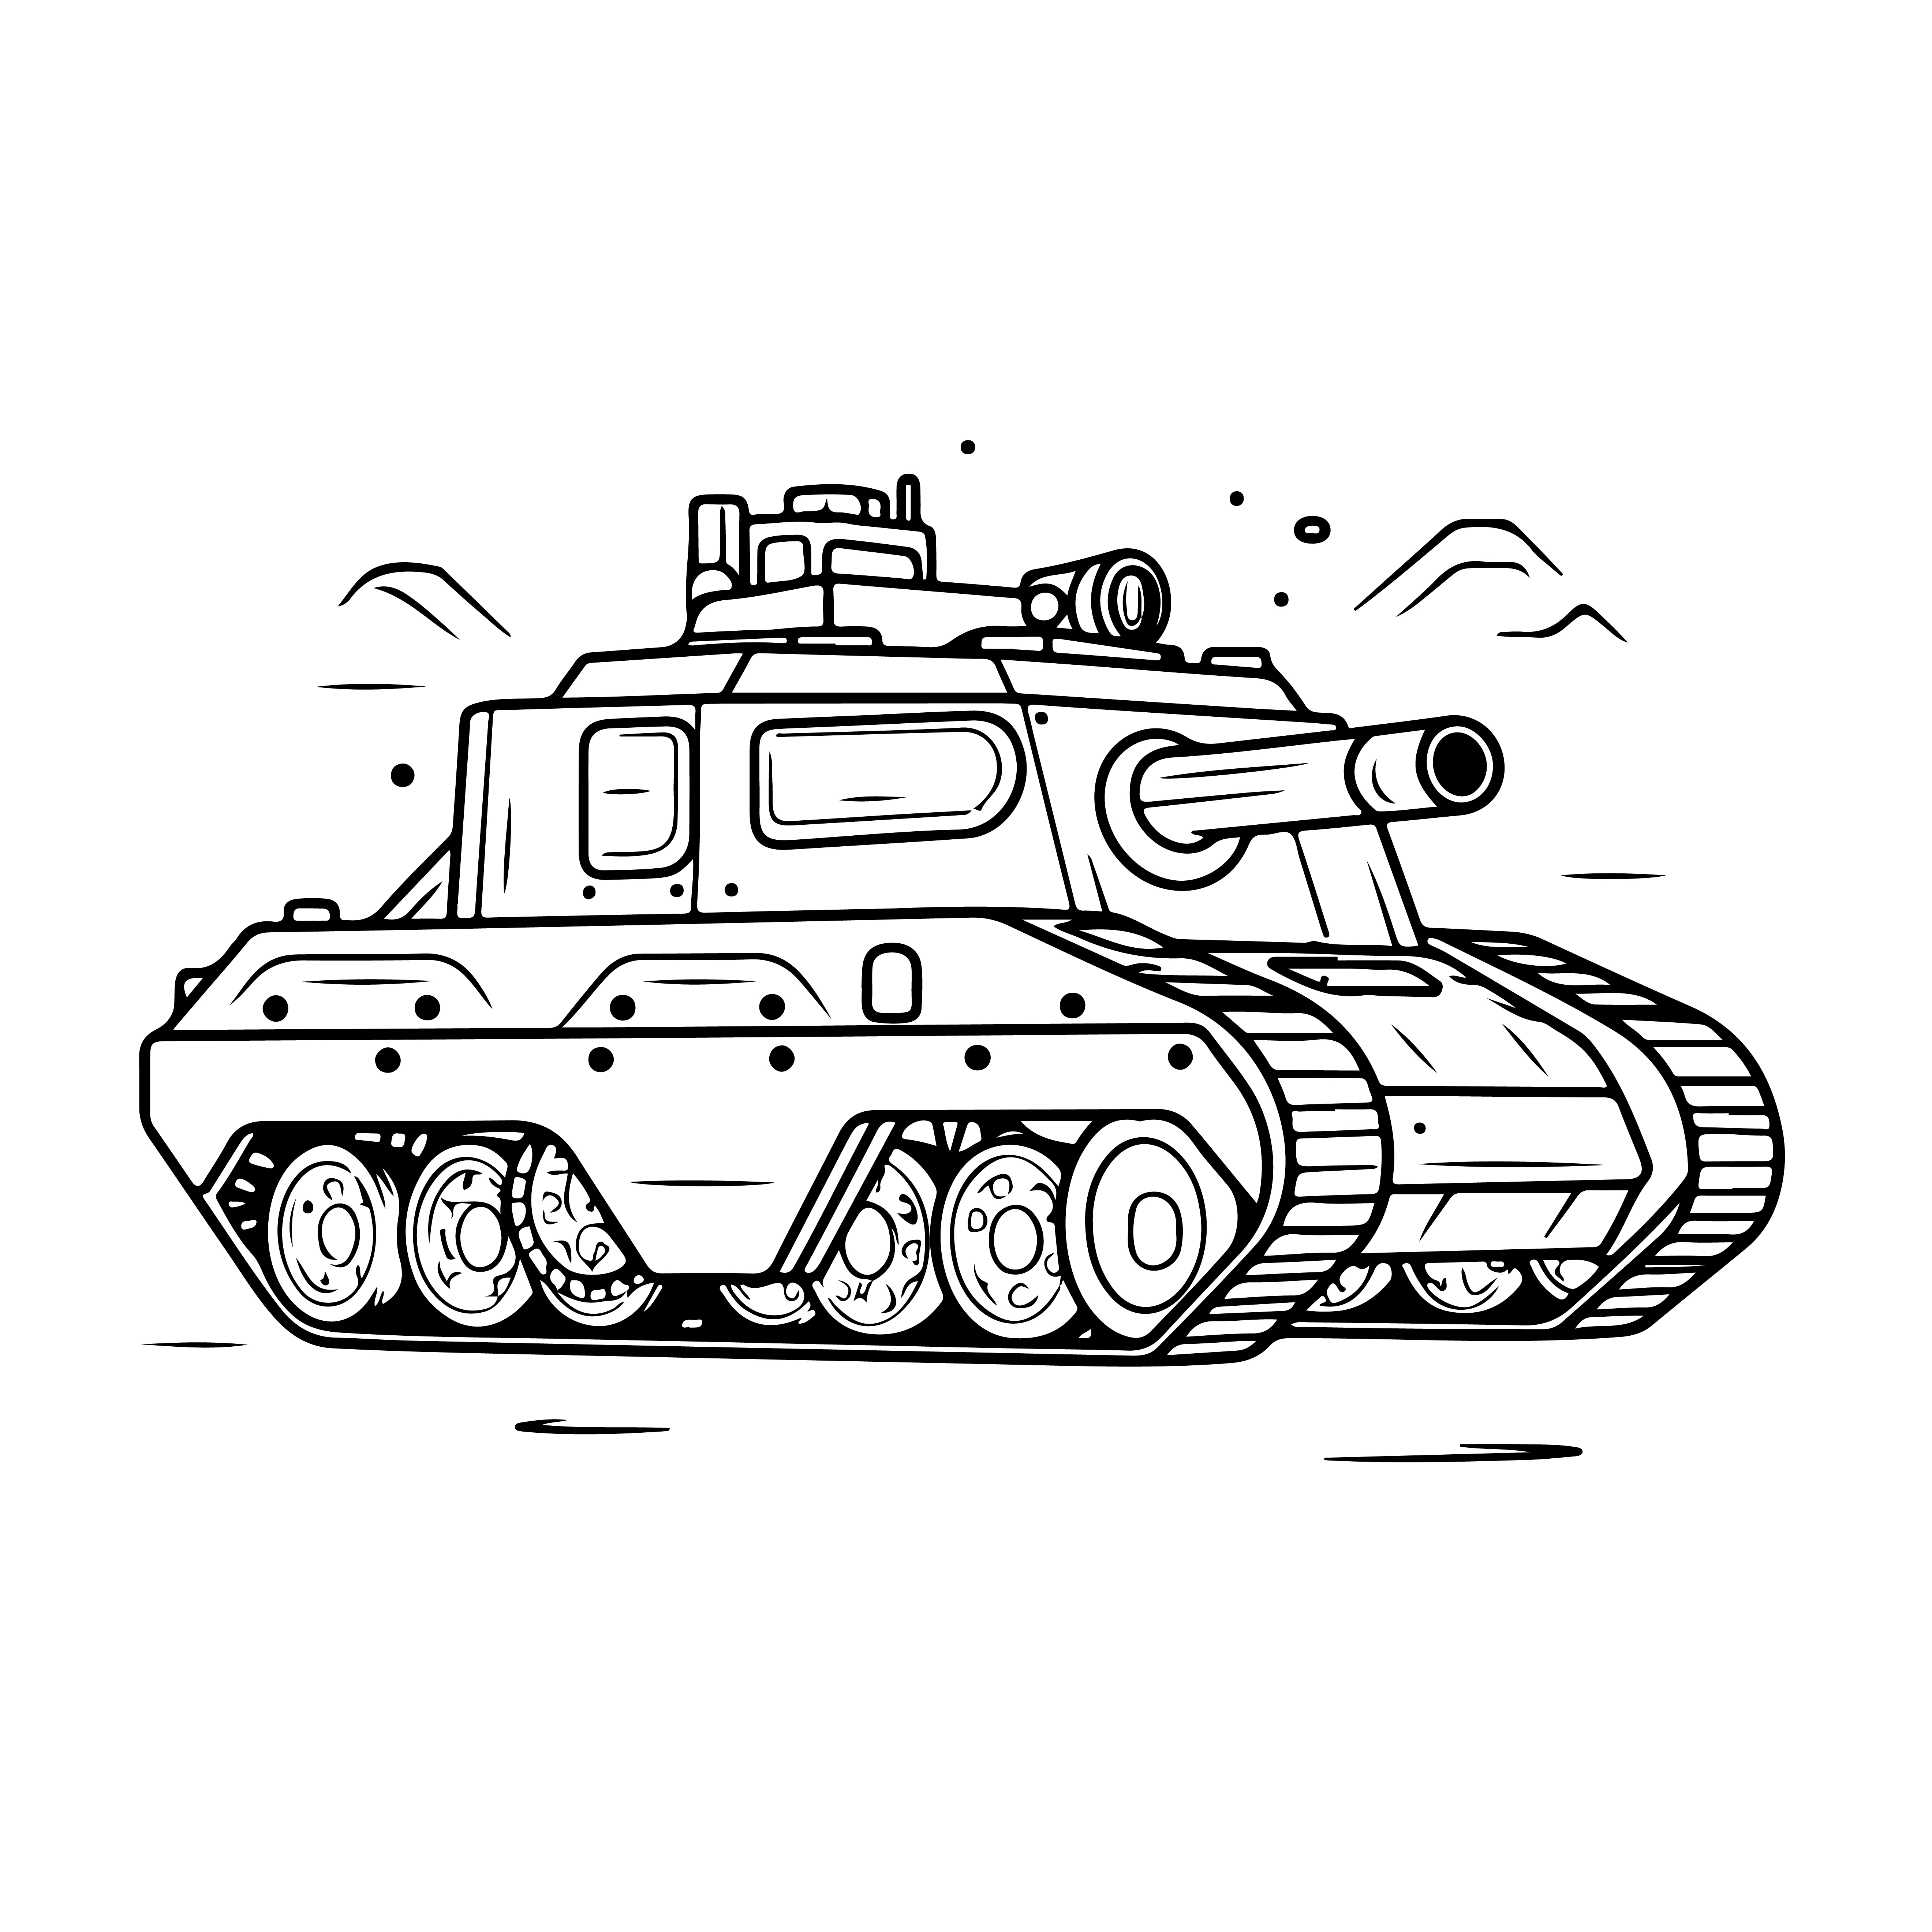 Раскраска танк монстр формата А4 в высоком качестве